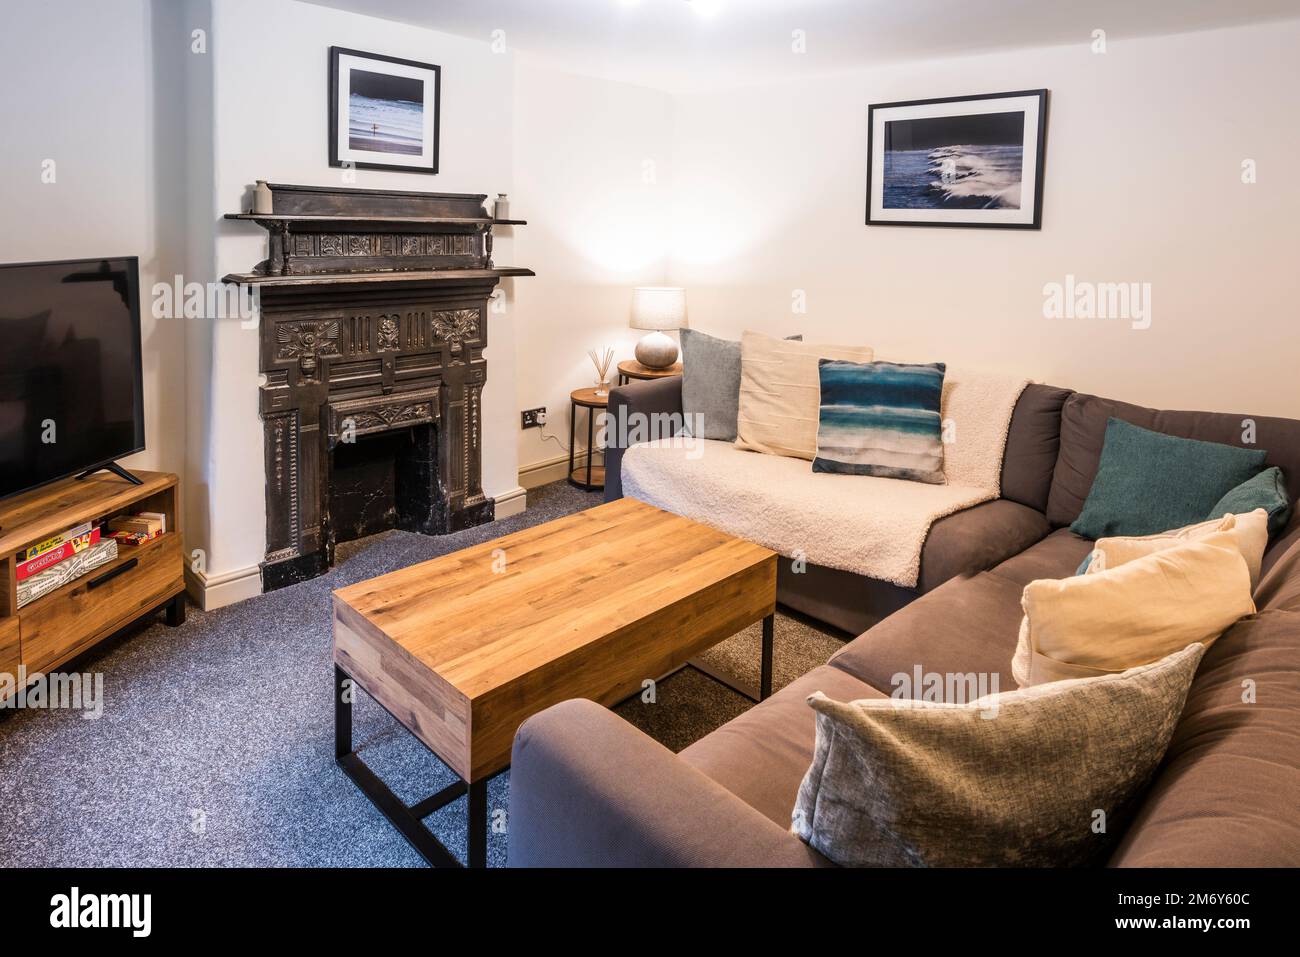 Una cómoda habitación en una propiedad airbnb disponible para alquilar en Newquay en Cornualles en el Reino Unido. Foto de stock